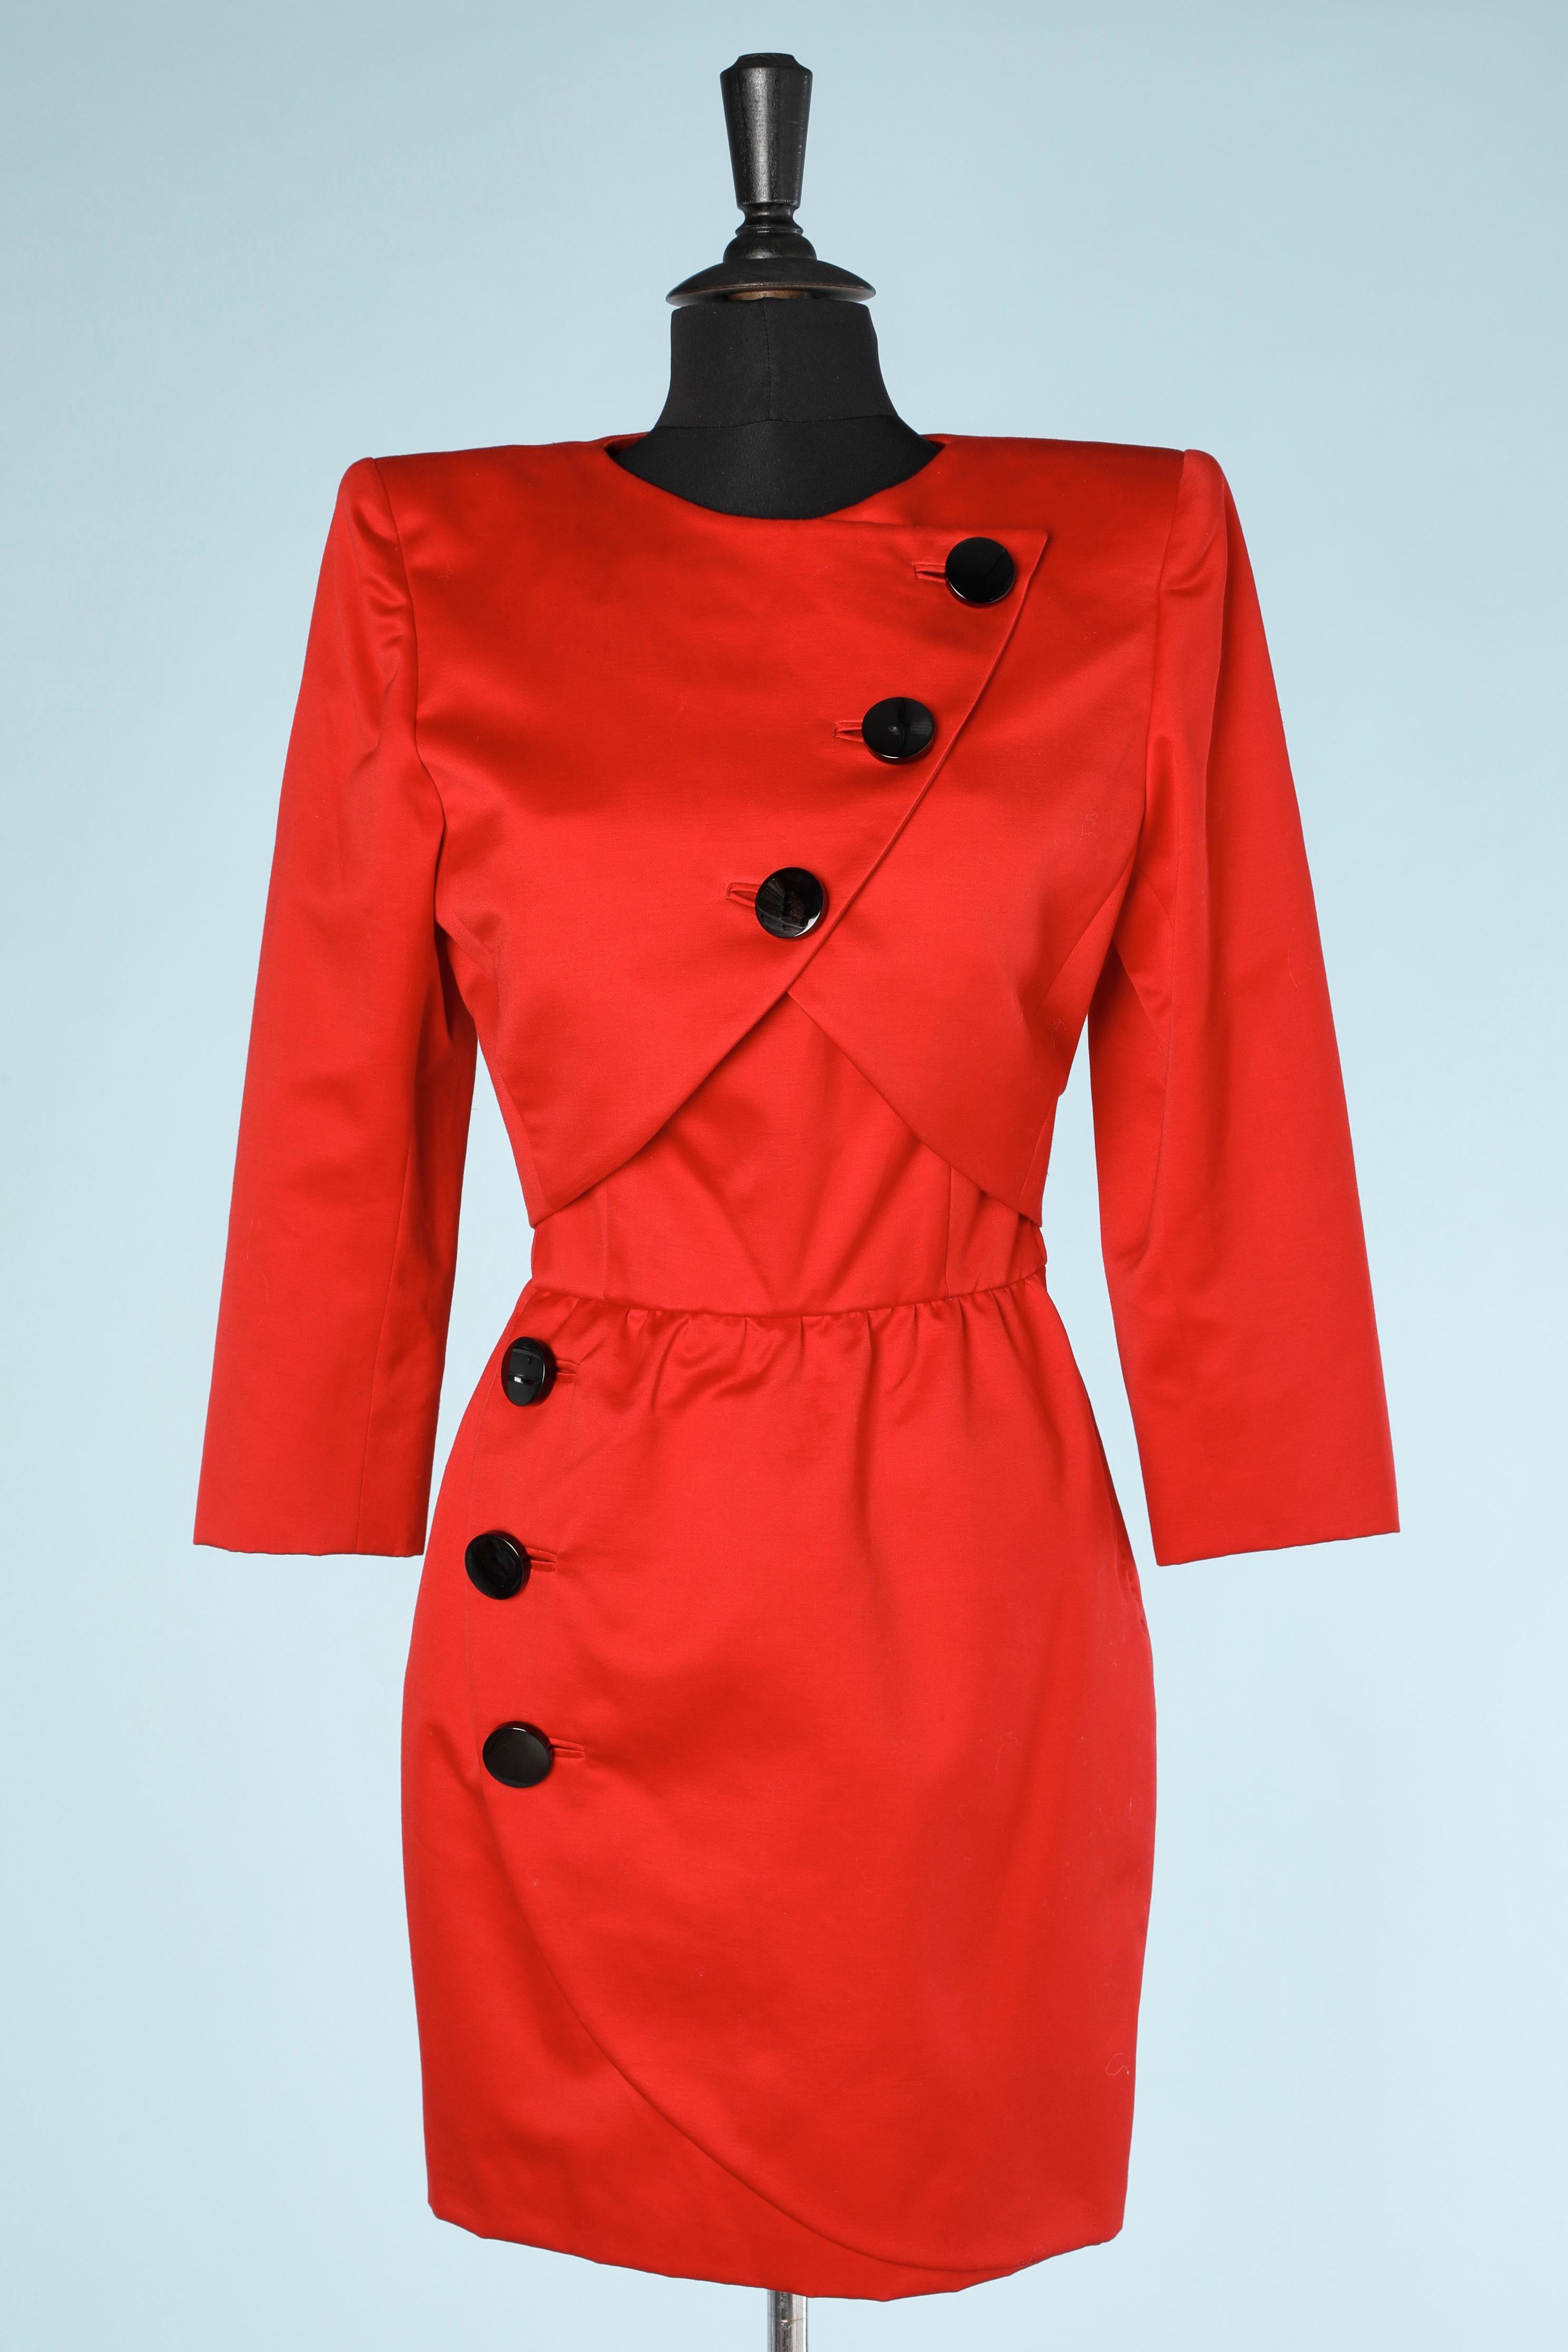 Ensemble veste rouge et robe bustier avec boutons noirs. Composition du tissu principal : coton . 
Pad d'épaule. 
La robe est enveloppée, désossée et paddée sur la poitrine. Fermeture à glissière sur la gauche et crochets et œillets. Gros grain à